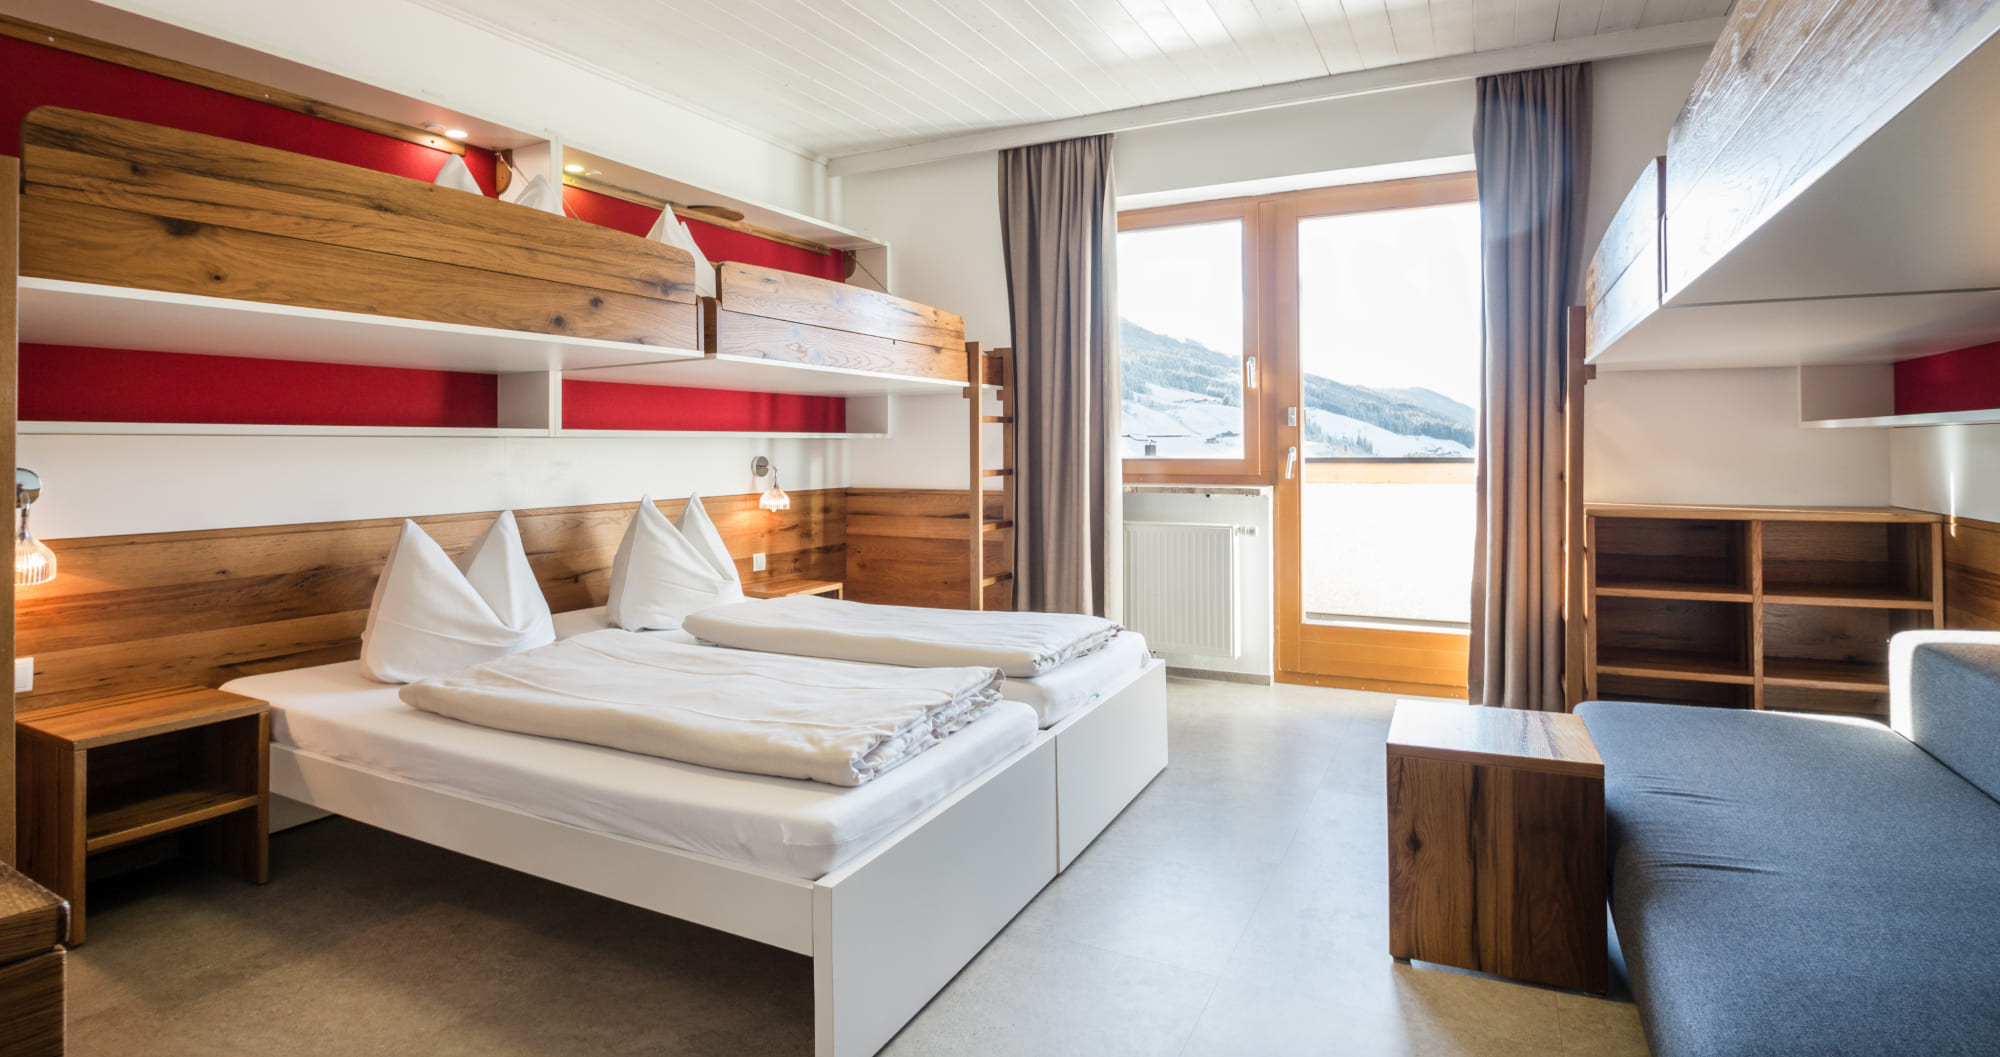 Moderne Mehrbettzimmer für Kinder und Jugendliche im Jugendhotel Markushof in Wagrain-Kleinarl, Salzburger Land © Selina Flasch